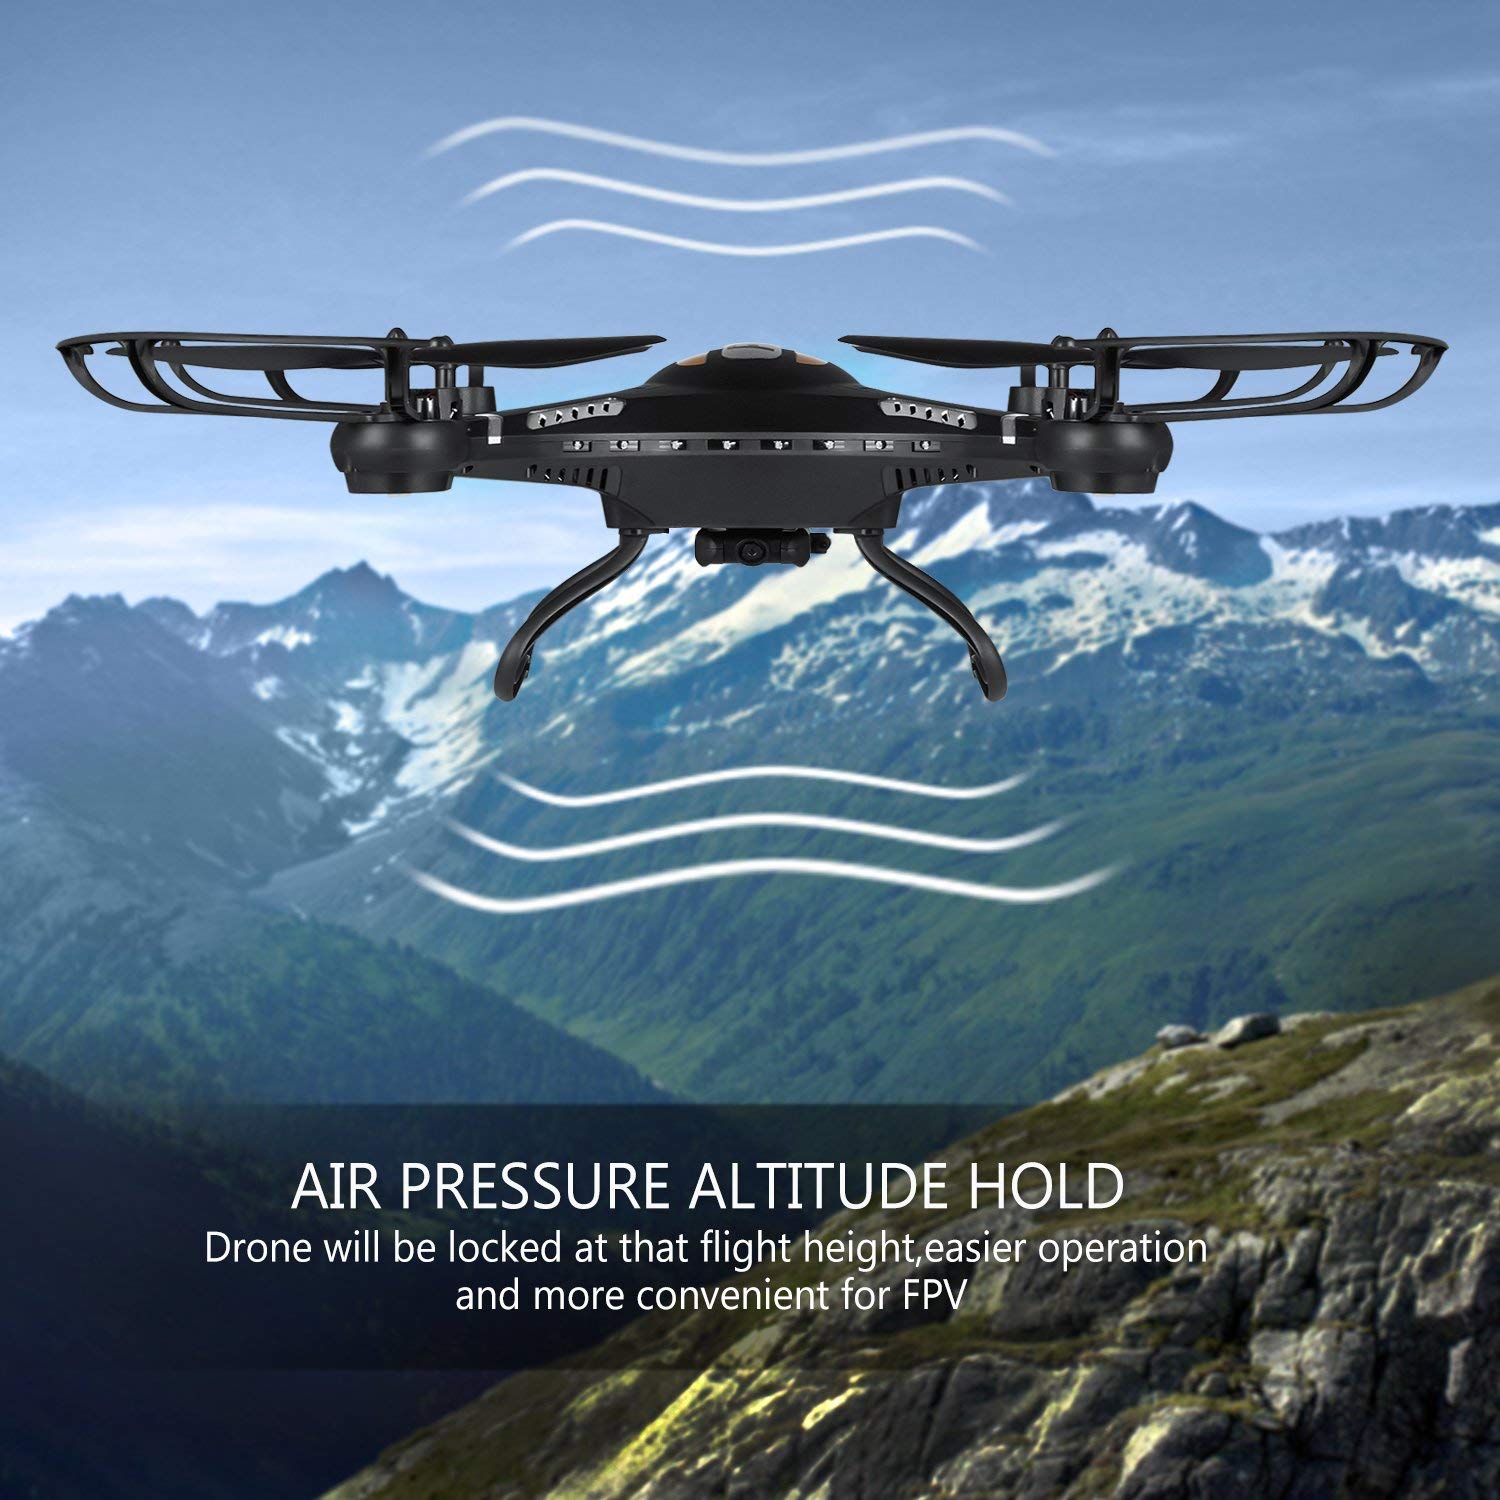 Amazon.com: RC Quadcopter, Potensic F183DH Drone RTF Altitude Hold ...